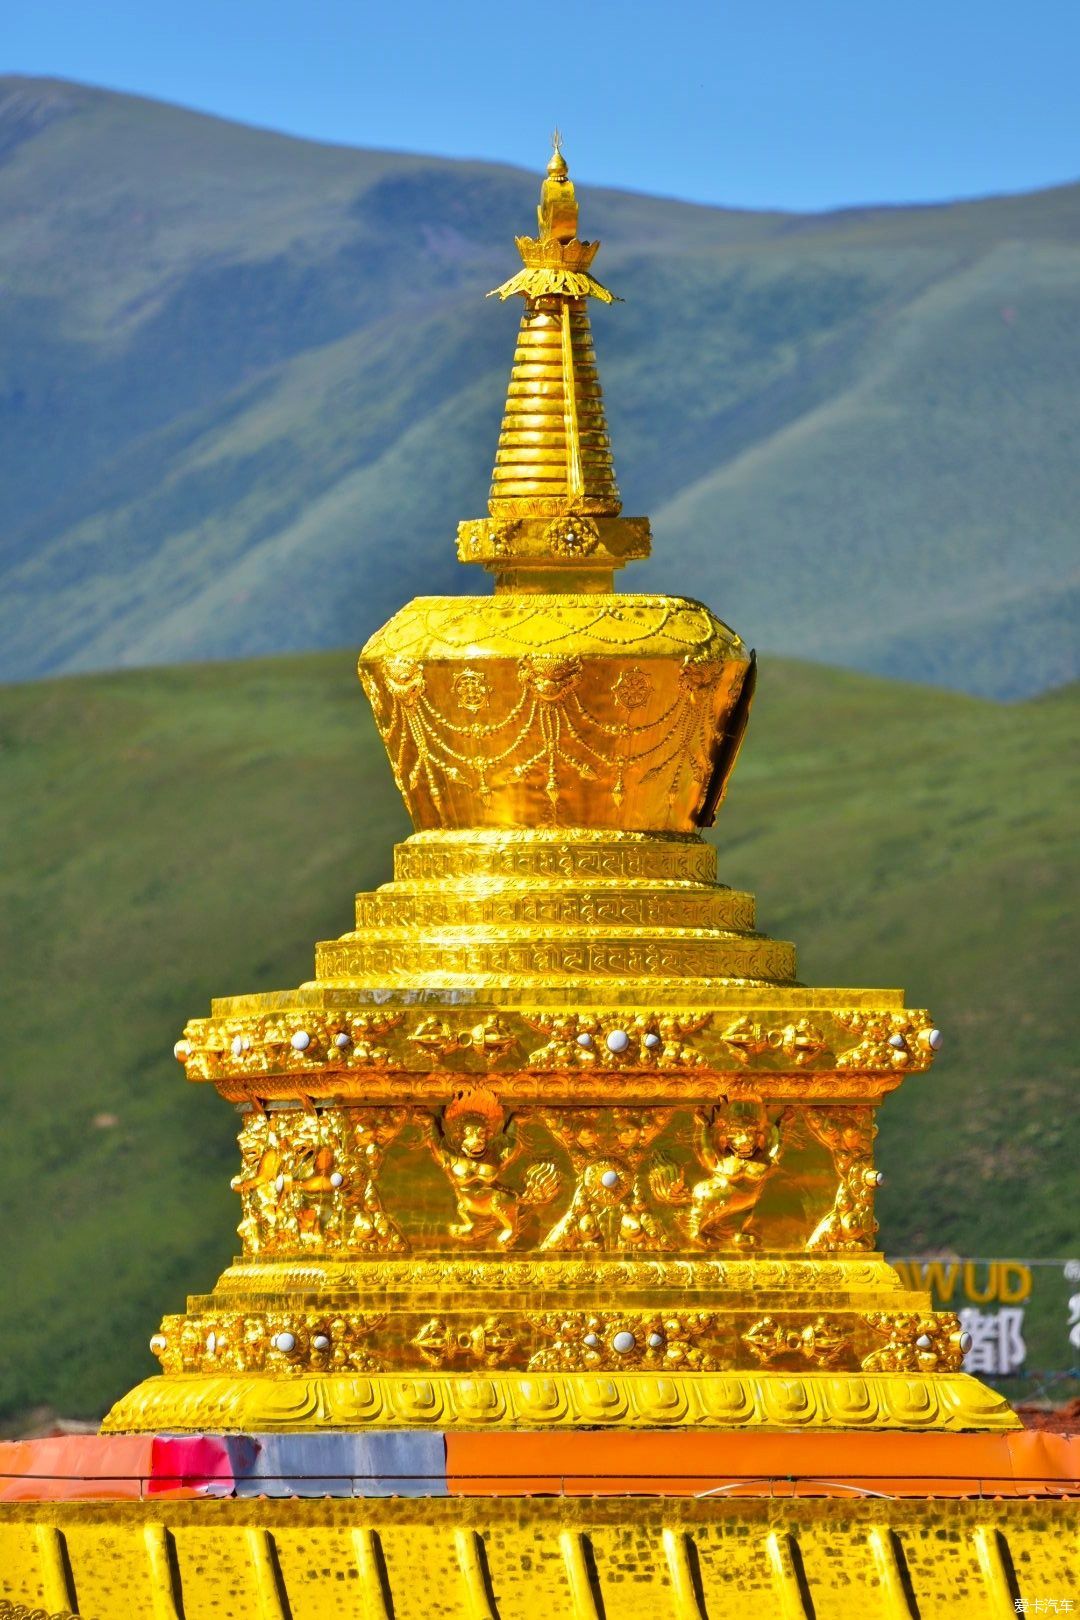 木雅金塔是由宁玛派红教六大佛寺之一的竹庆寺活佛多吉扎西活佛捐资于